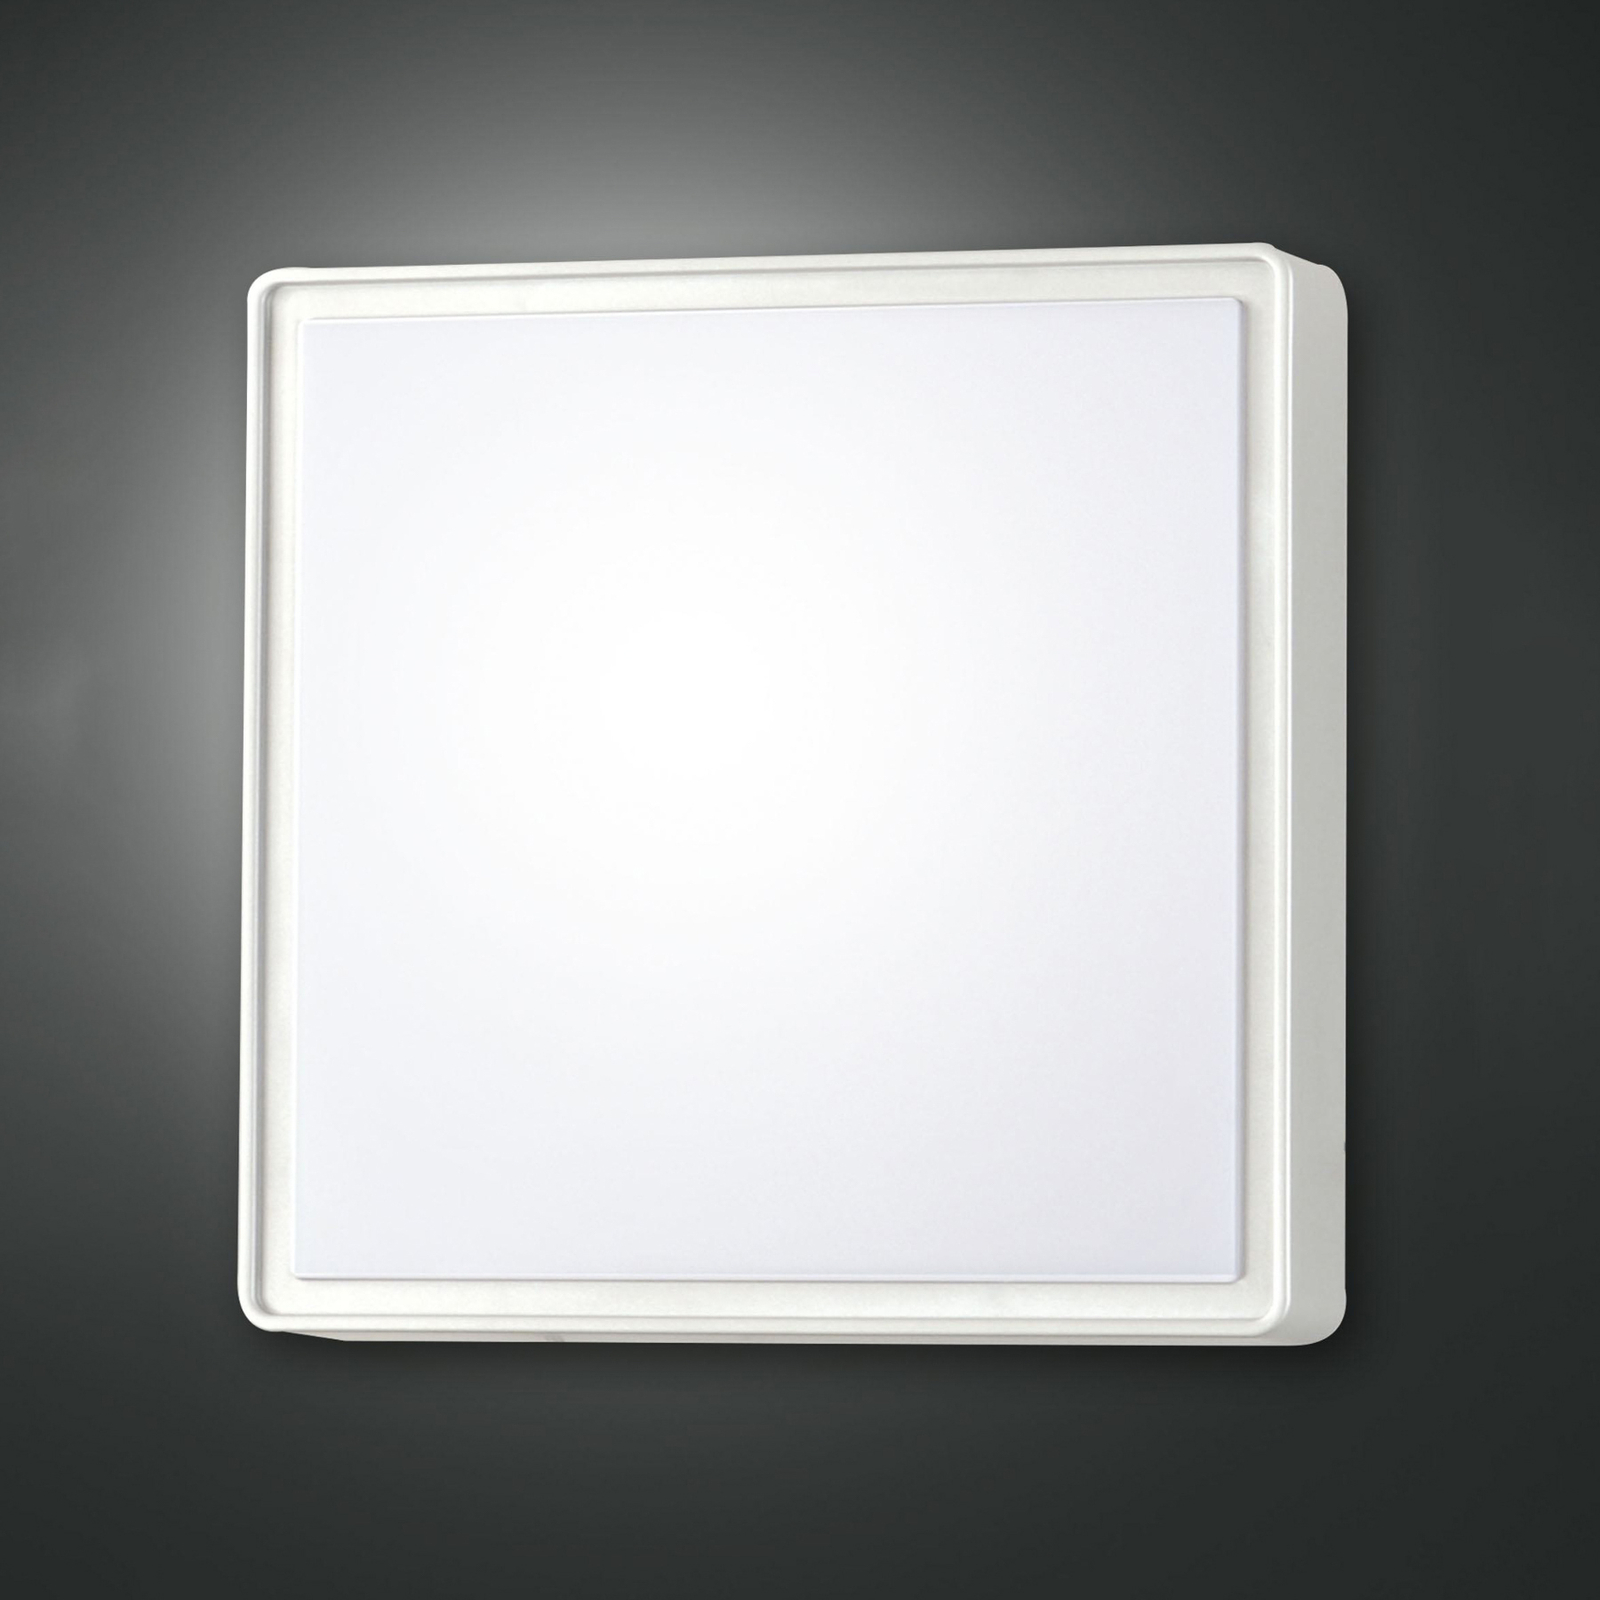 Φωτιστικό τοίχου Oban, 30 cm x 30 cm, αισθητήρας, 2 x E27, λευκό, IP65